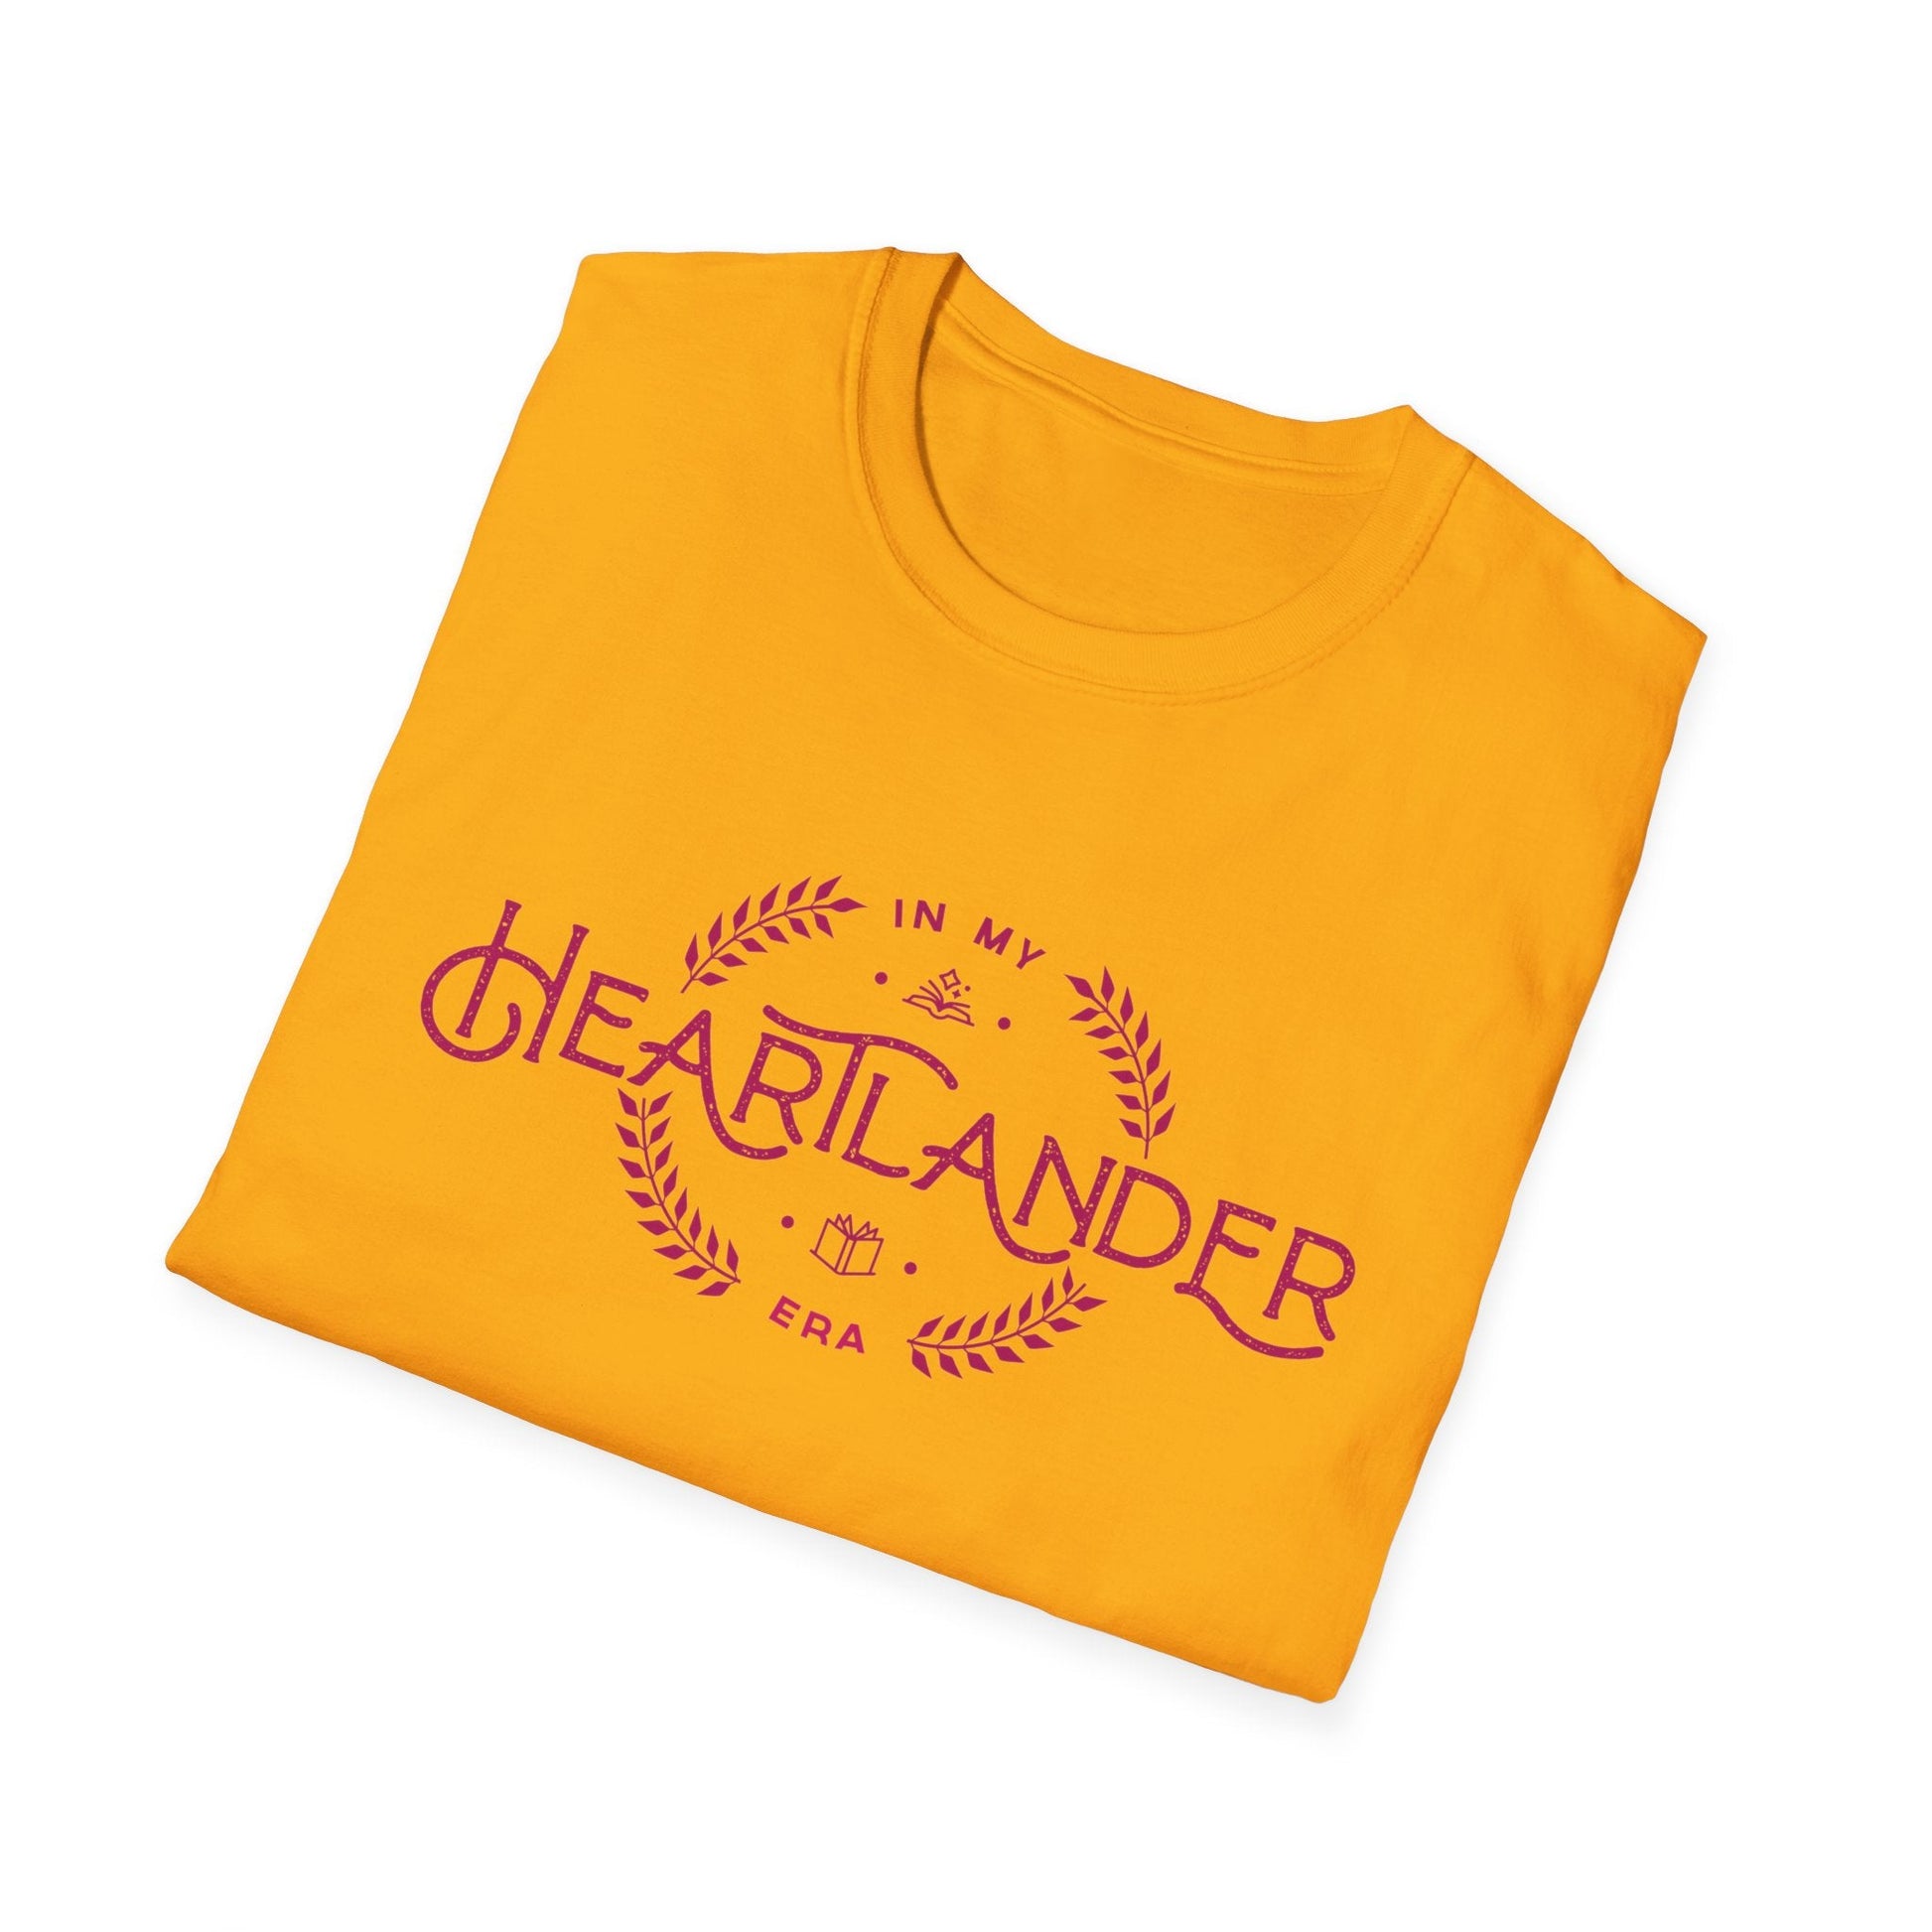 T-Shirt - Heartlander Era Unisex Softstyle T-Shirt